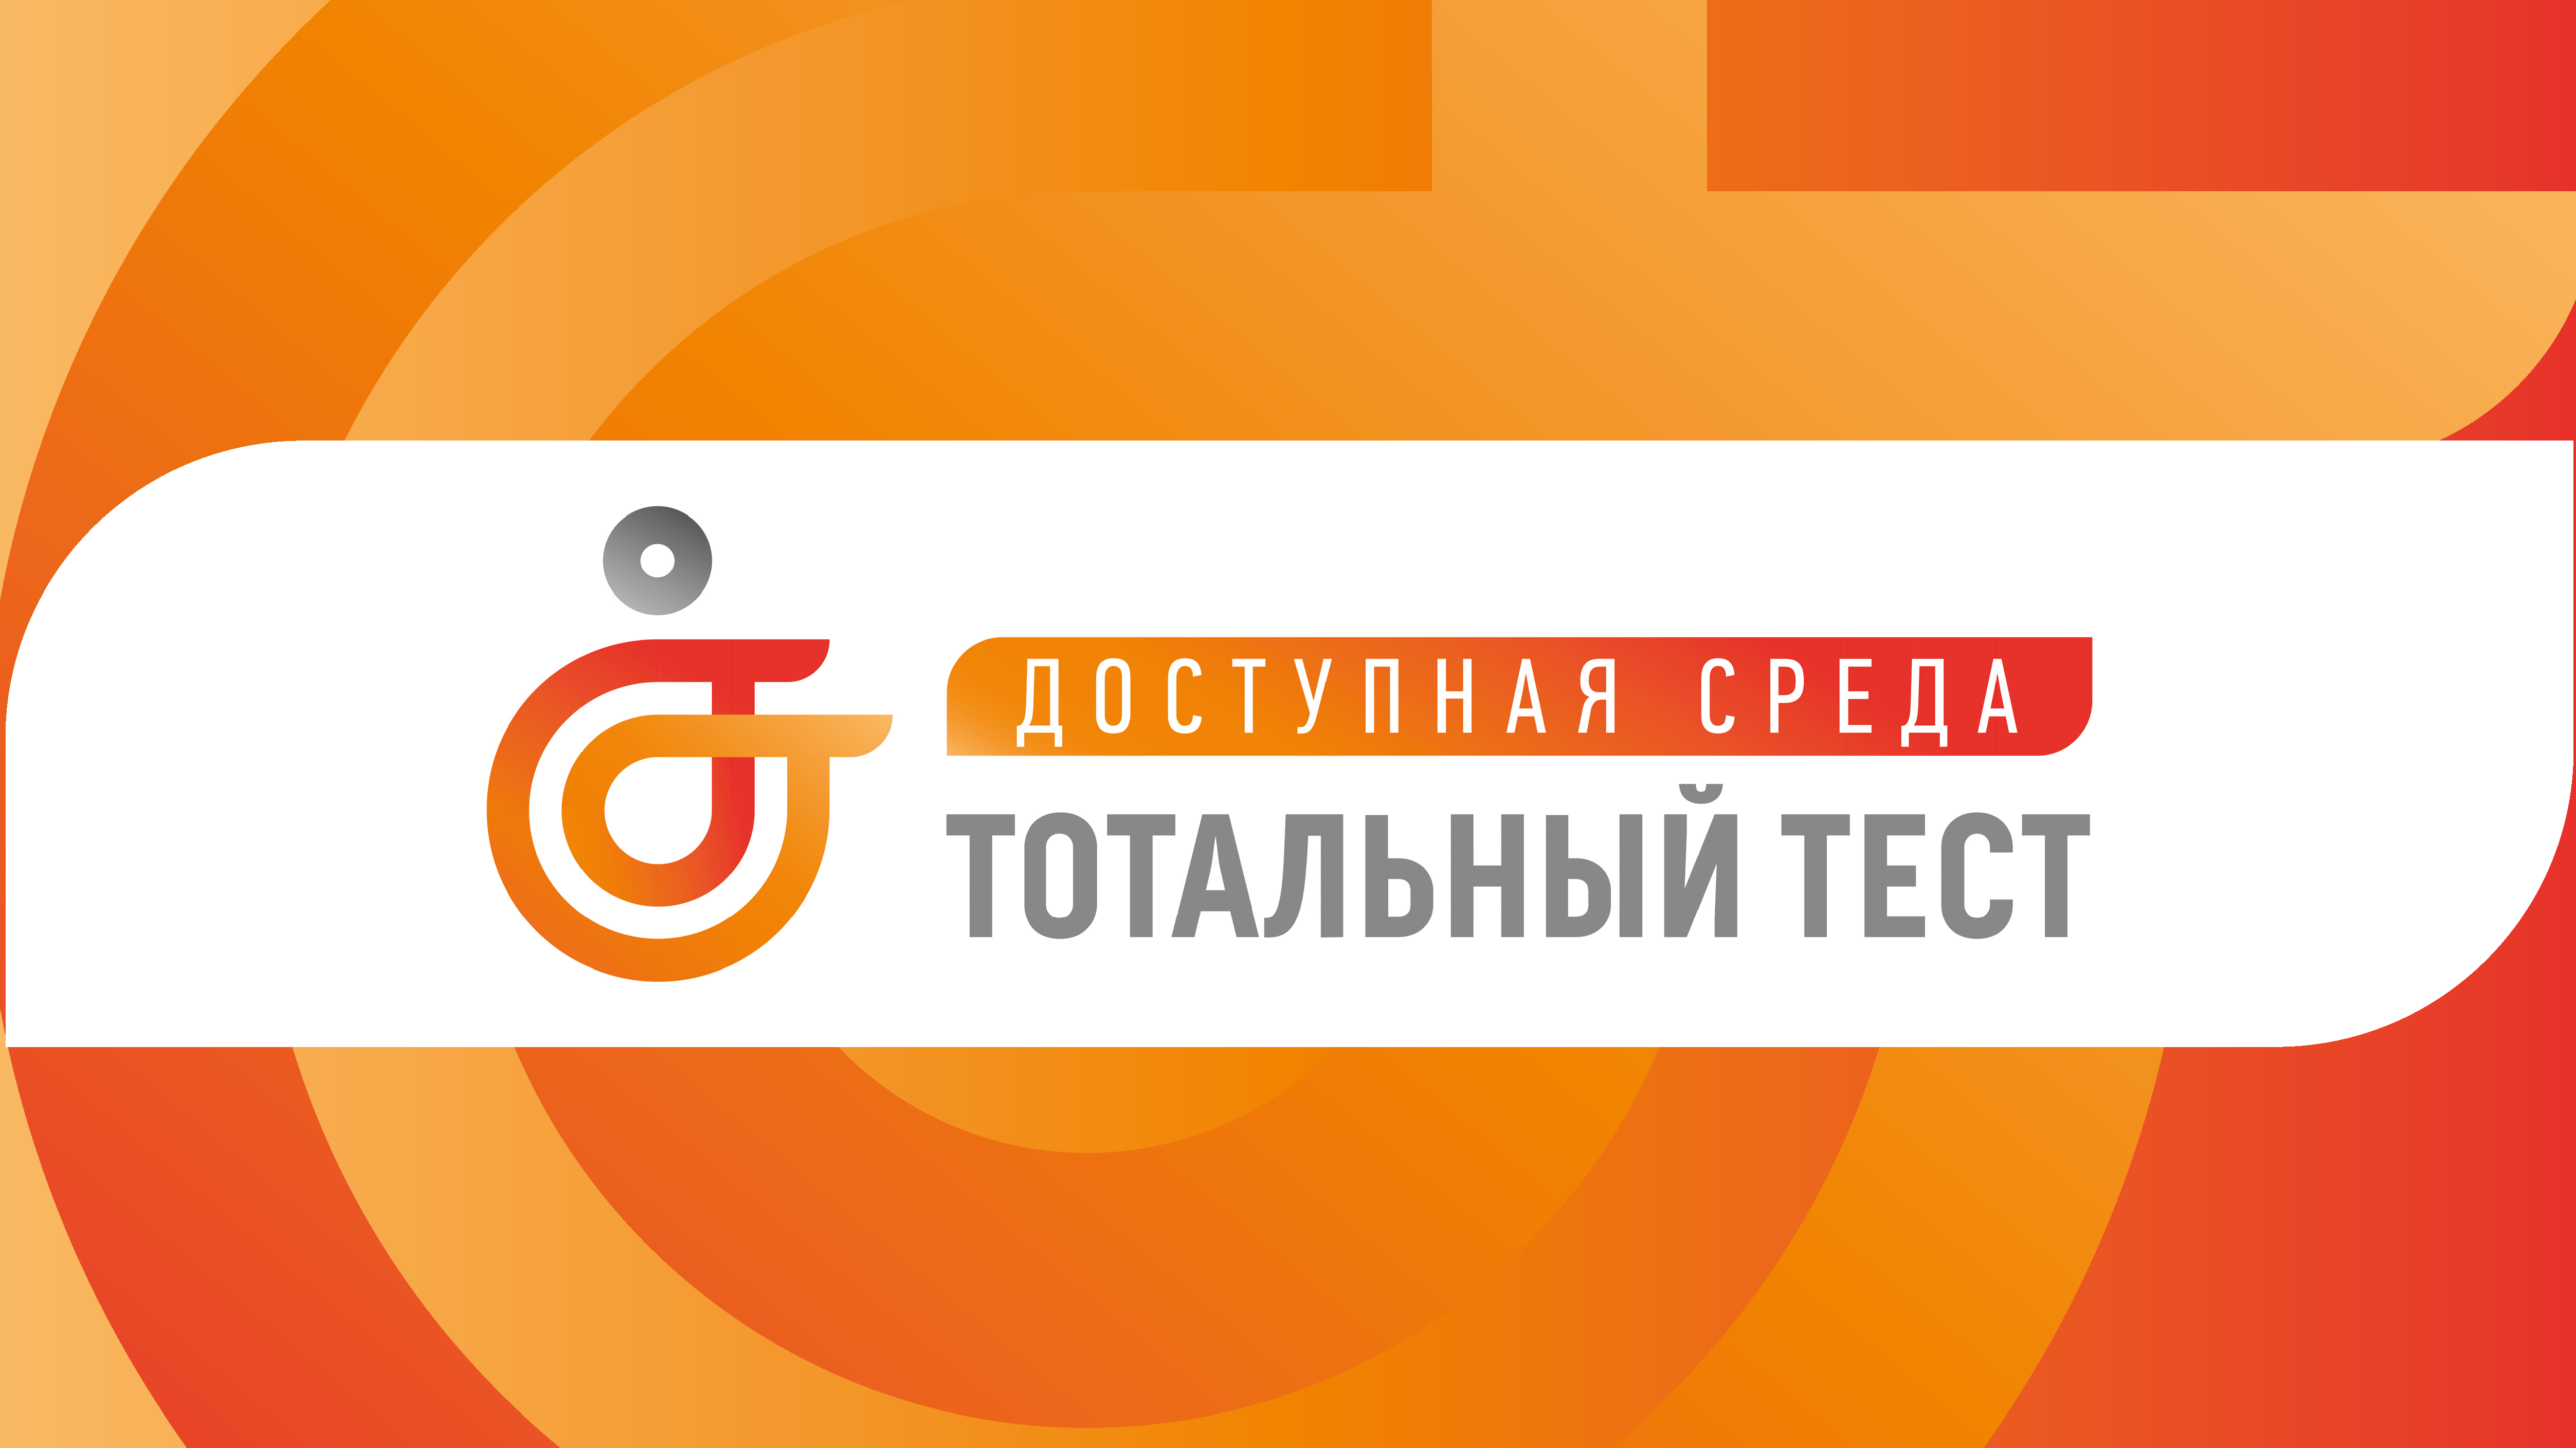 С 1 по 10 декабря при поддержке Фонда президентских грантов проводится Общероссийская акция «Тотальный тест «Доступная среда».